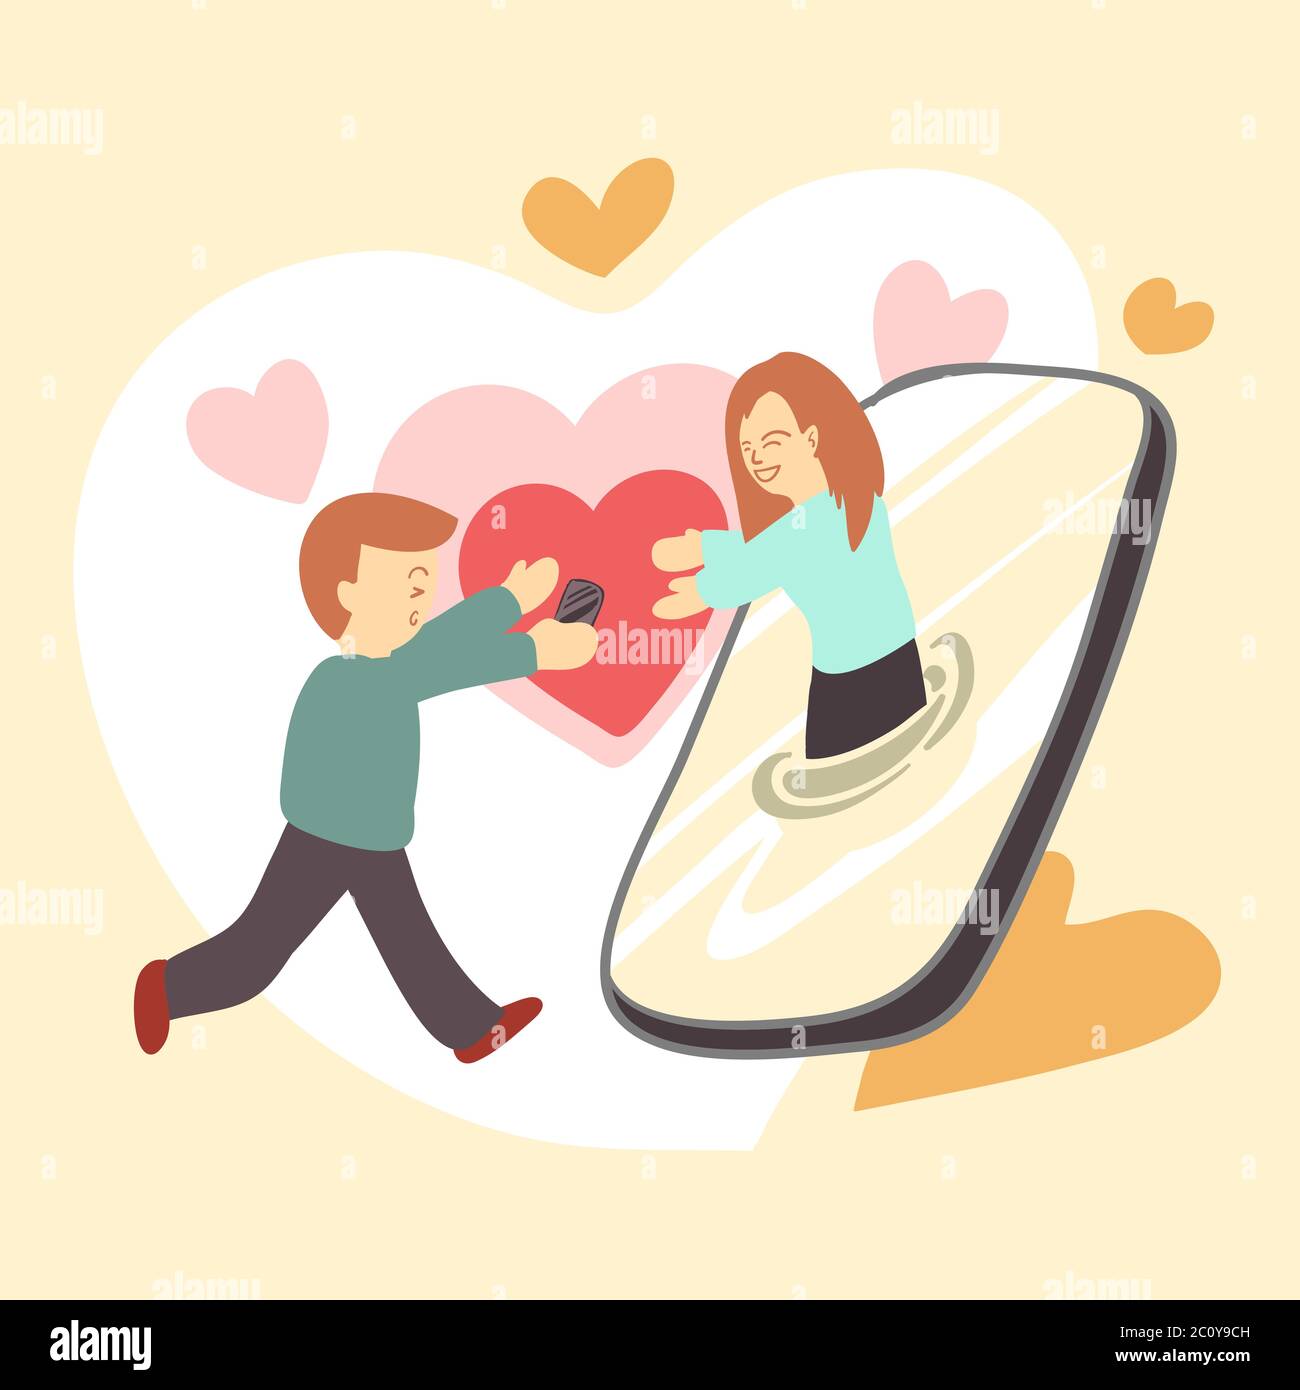 Illustrazione vettoriale della coppia che si chiude insieme dallo smartphone. Devono essere coccolati sui social media in tempo di blocco o quarantena. Illustrazione Vettoriale